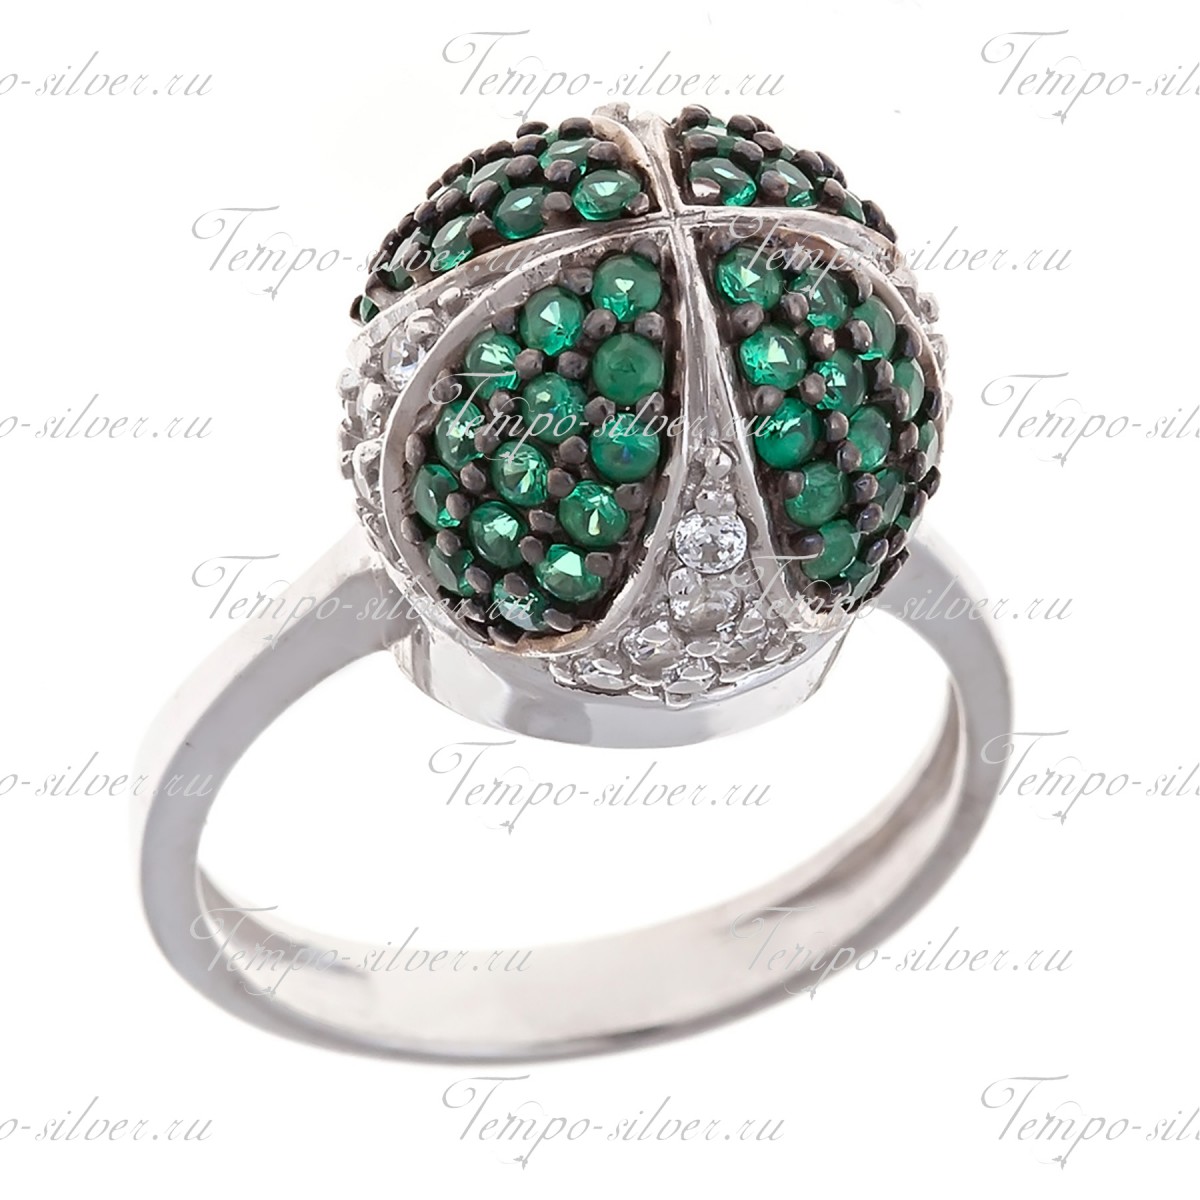 Кольцо из серебра с выпуклым шаром в форме короны, усыпанной белыми и зелеными камнями цена